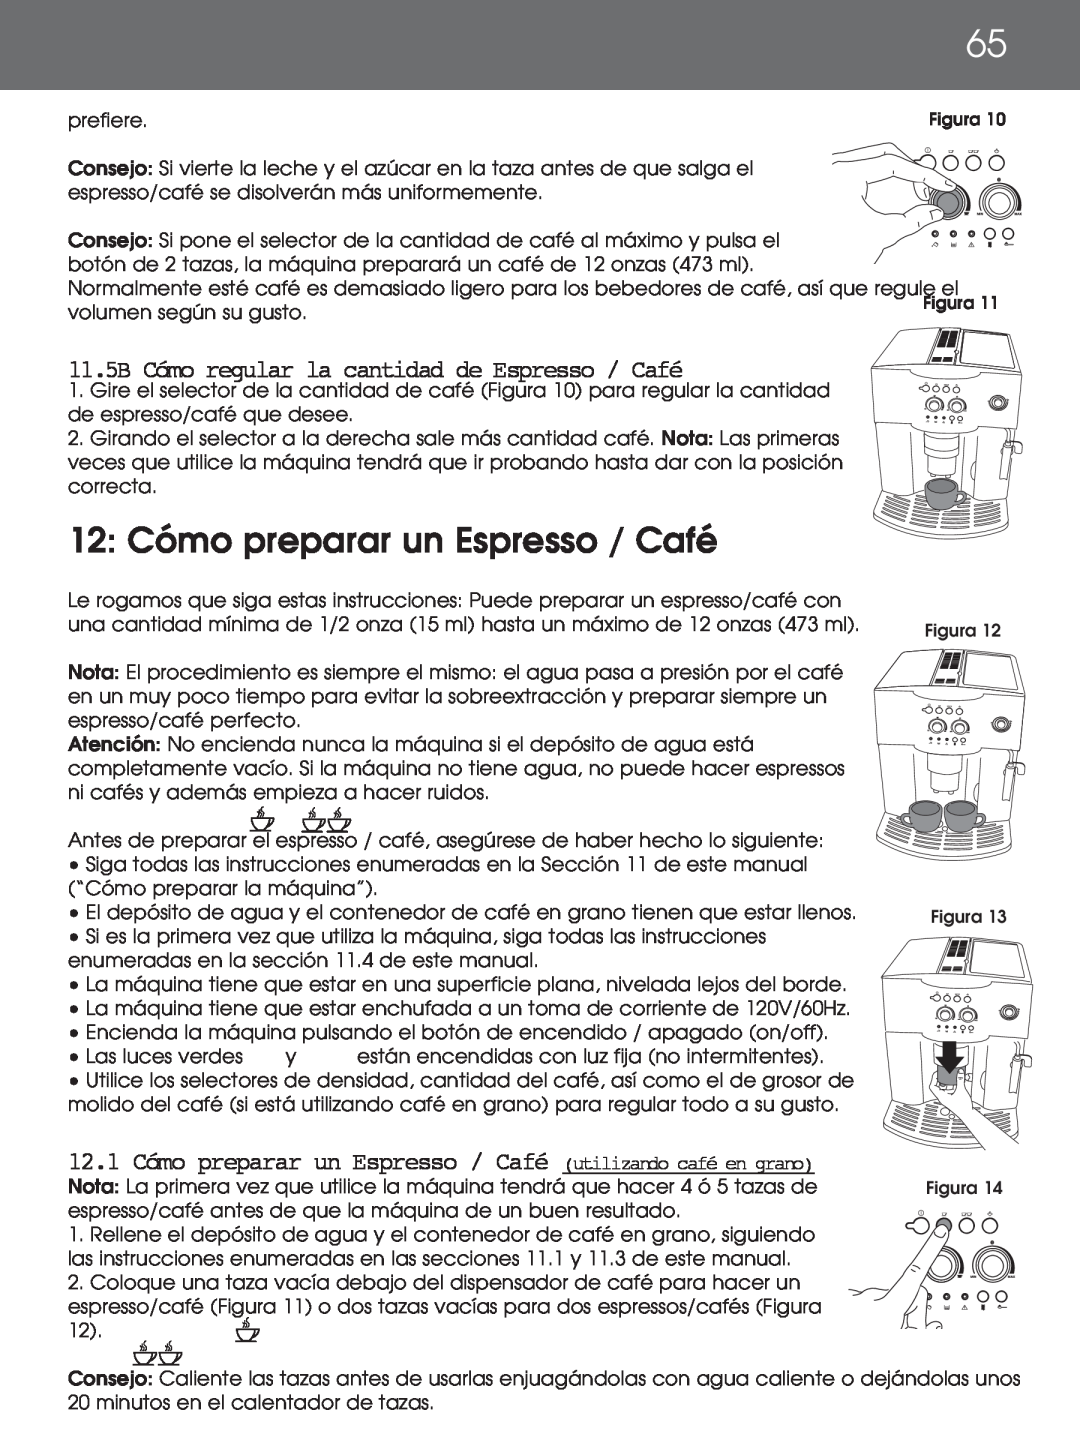 DeLonghi EAM4000 instruction manual 12: Cómo preparar un Espresso / Café, 11.5B Cómo regular la cantidad de Espresso / Café 